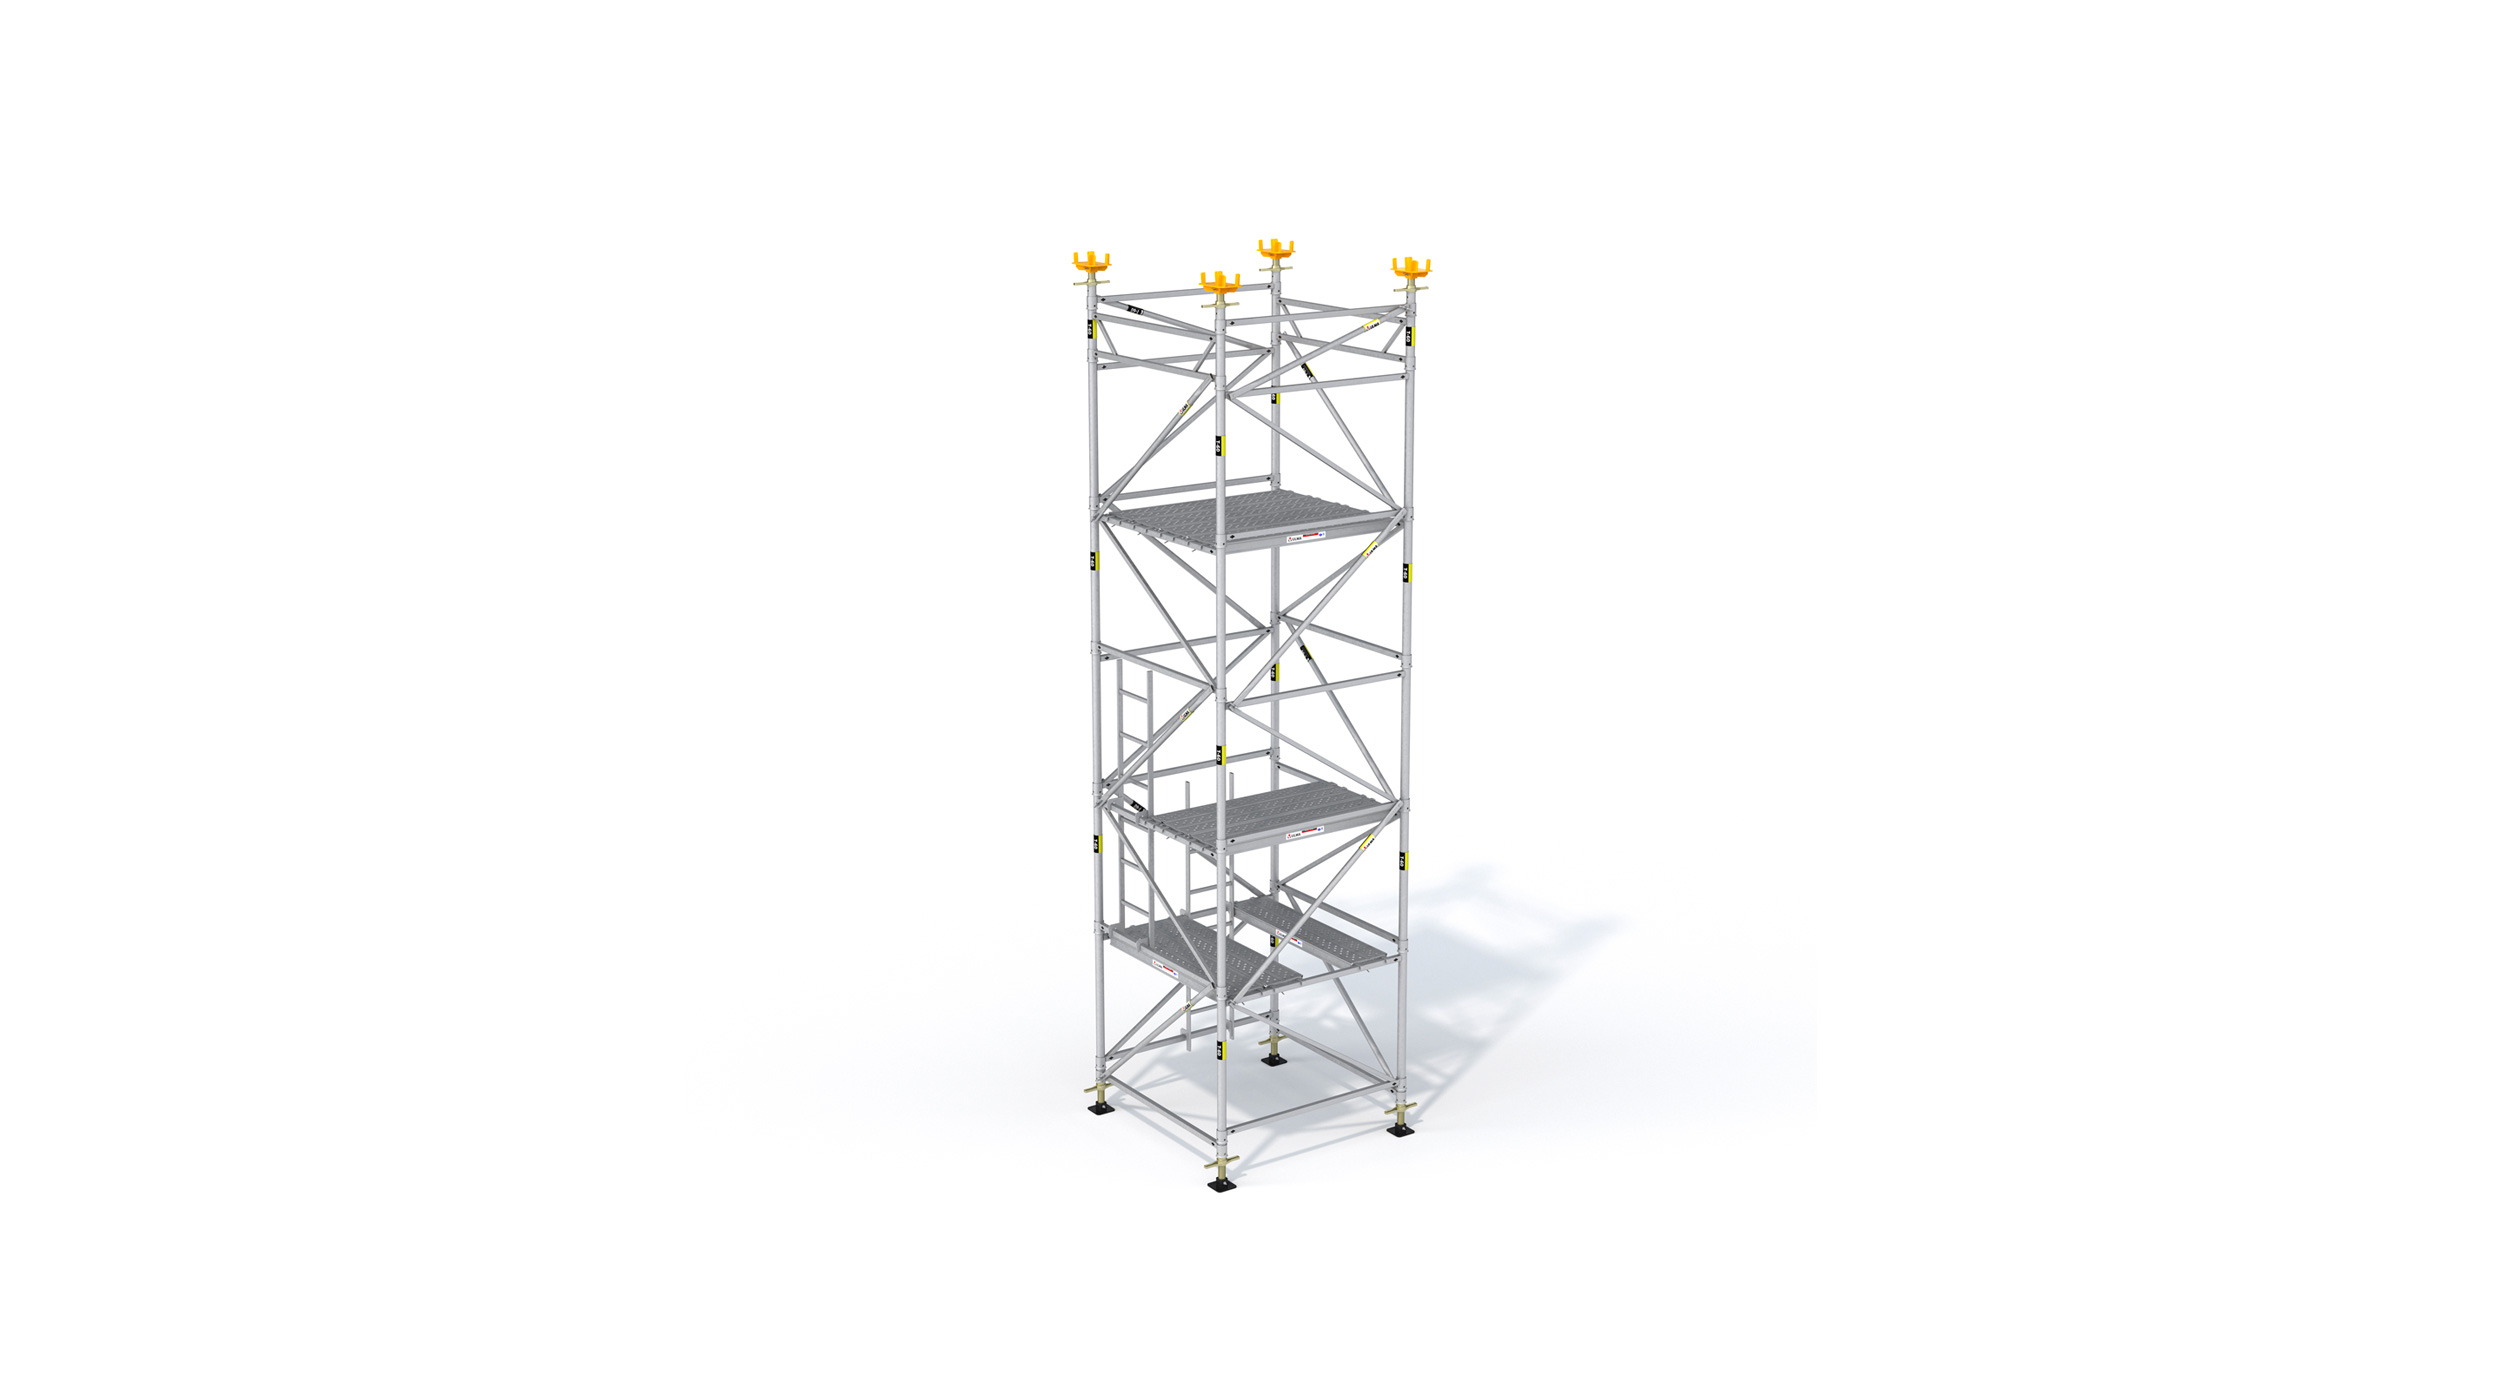 Torre de alta rentabilidade, desenvolvida para construção de pontes e também para algumas aplicações em construção industrial e edificação.